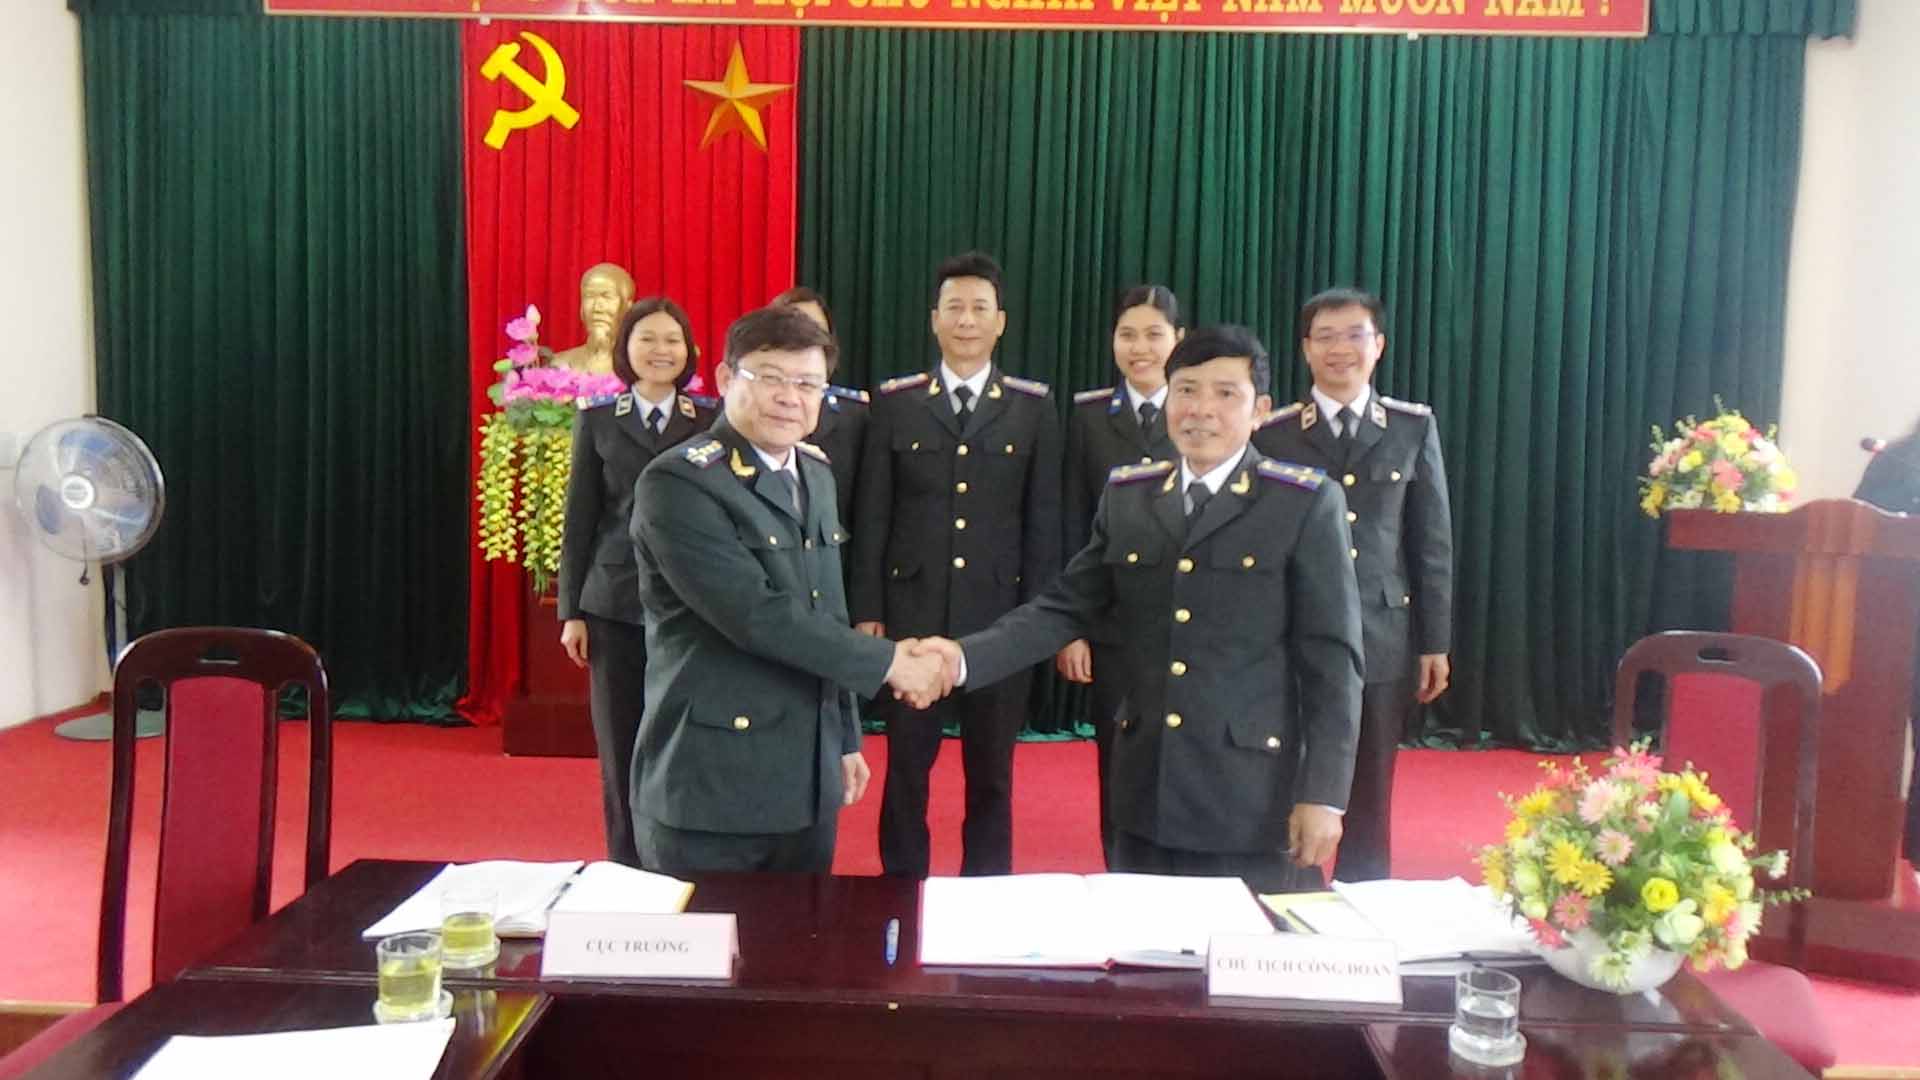 Cục Thi hành án dân sự - Công đoàn Cục Thi hành án dân sự tỉnh Tuyên Quang tổ chức Hội nghị cán bộ, công chức năm 2019.